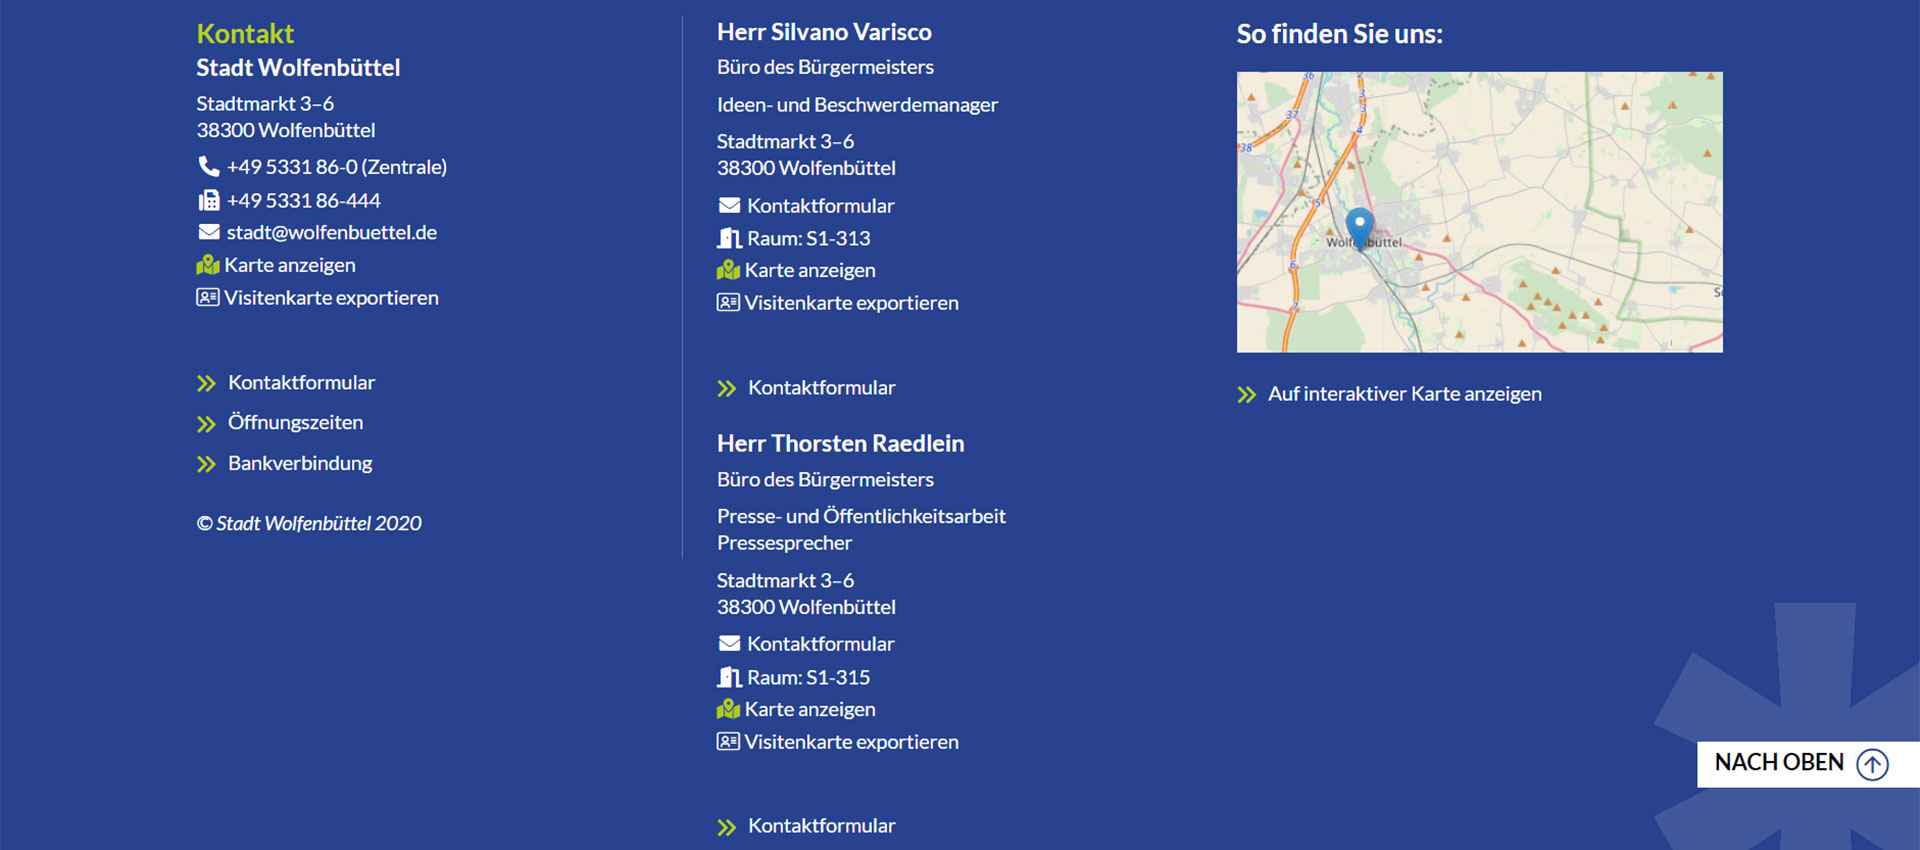 Screenshot der Fußzeile dieser Internetseite mit den Kontaktdaten der Stadt Wolfenbüttel sowie Öffnungszeiten und Bankverbindung. Das Rathaus ist in einem Ausschnitt der Stadtkarte markiert.